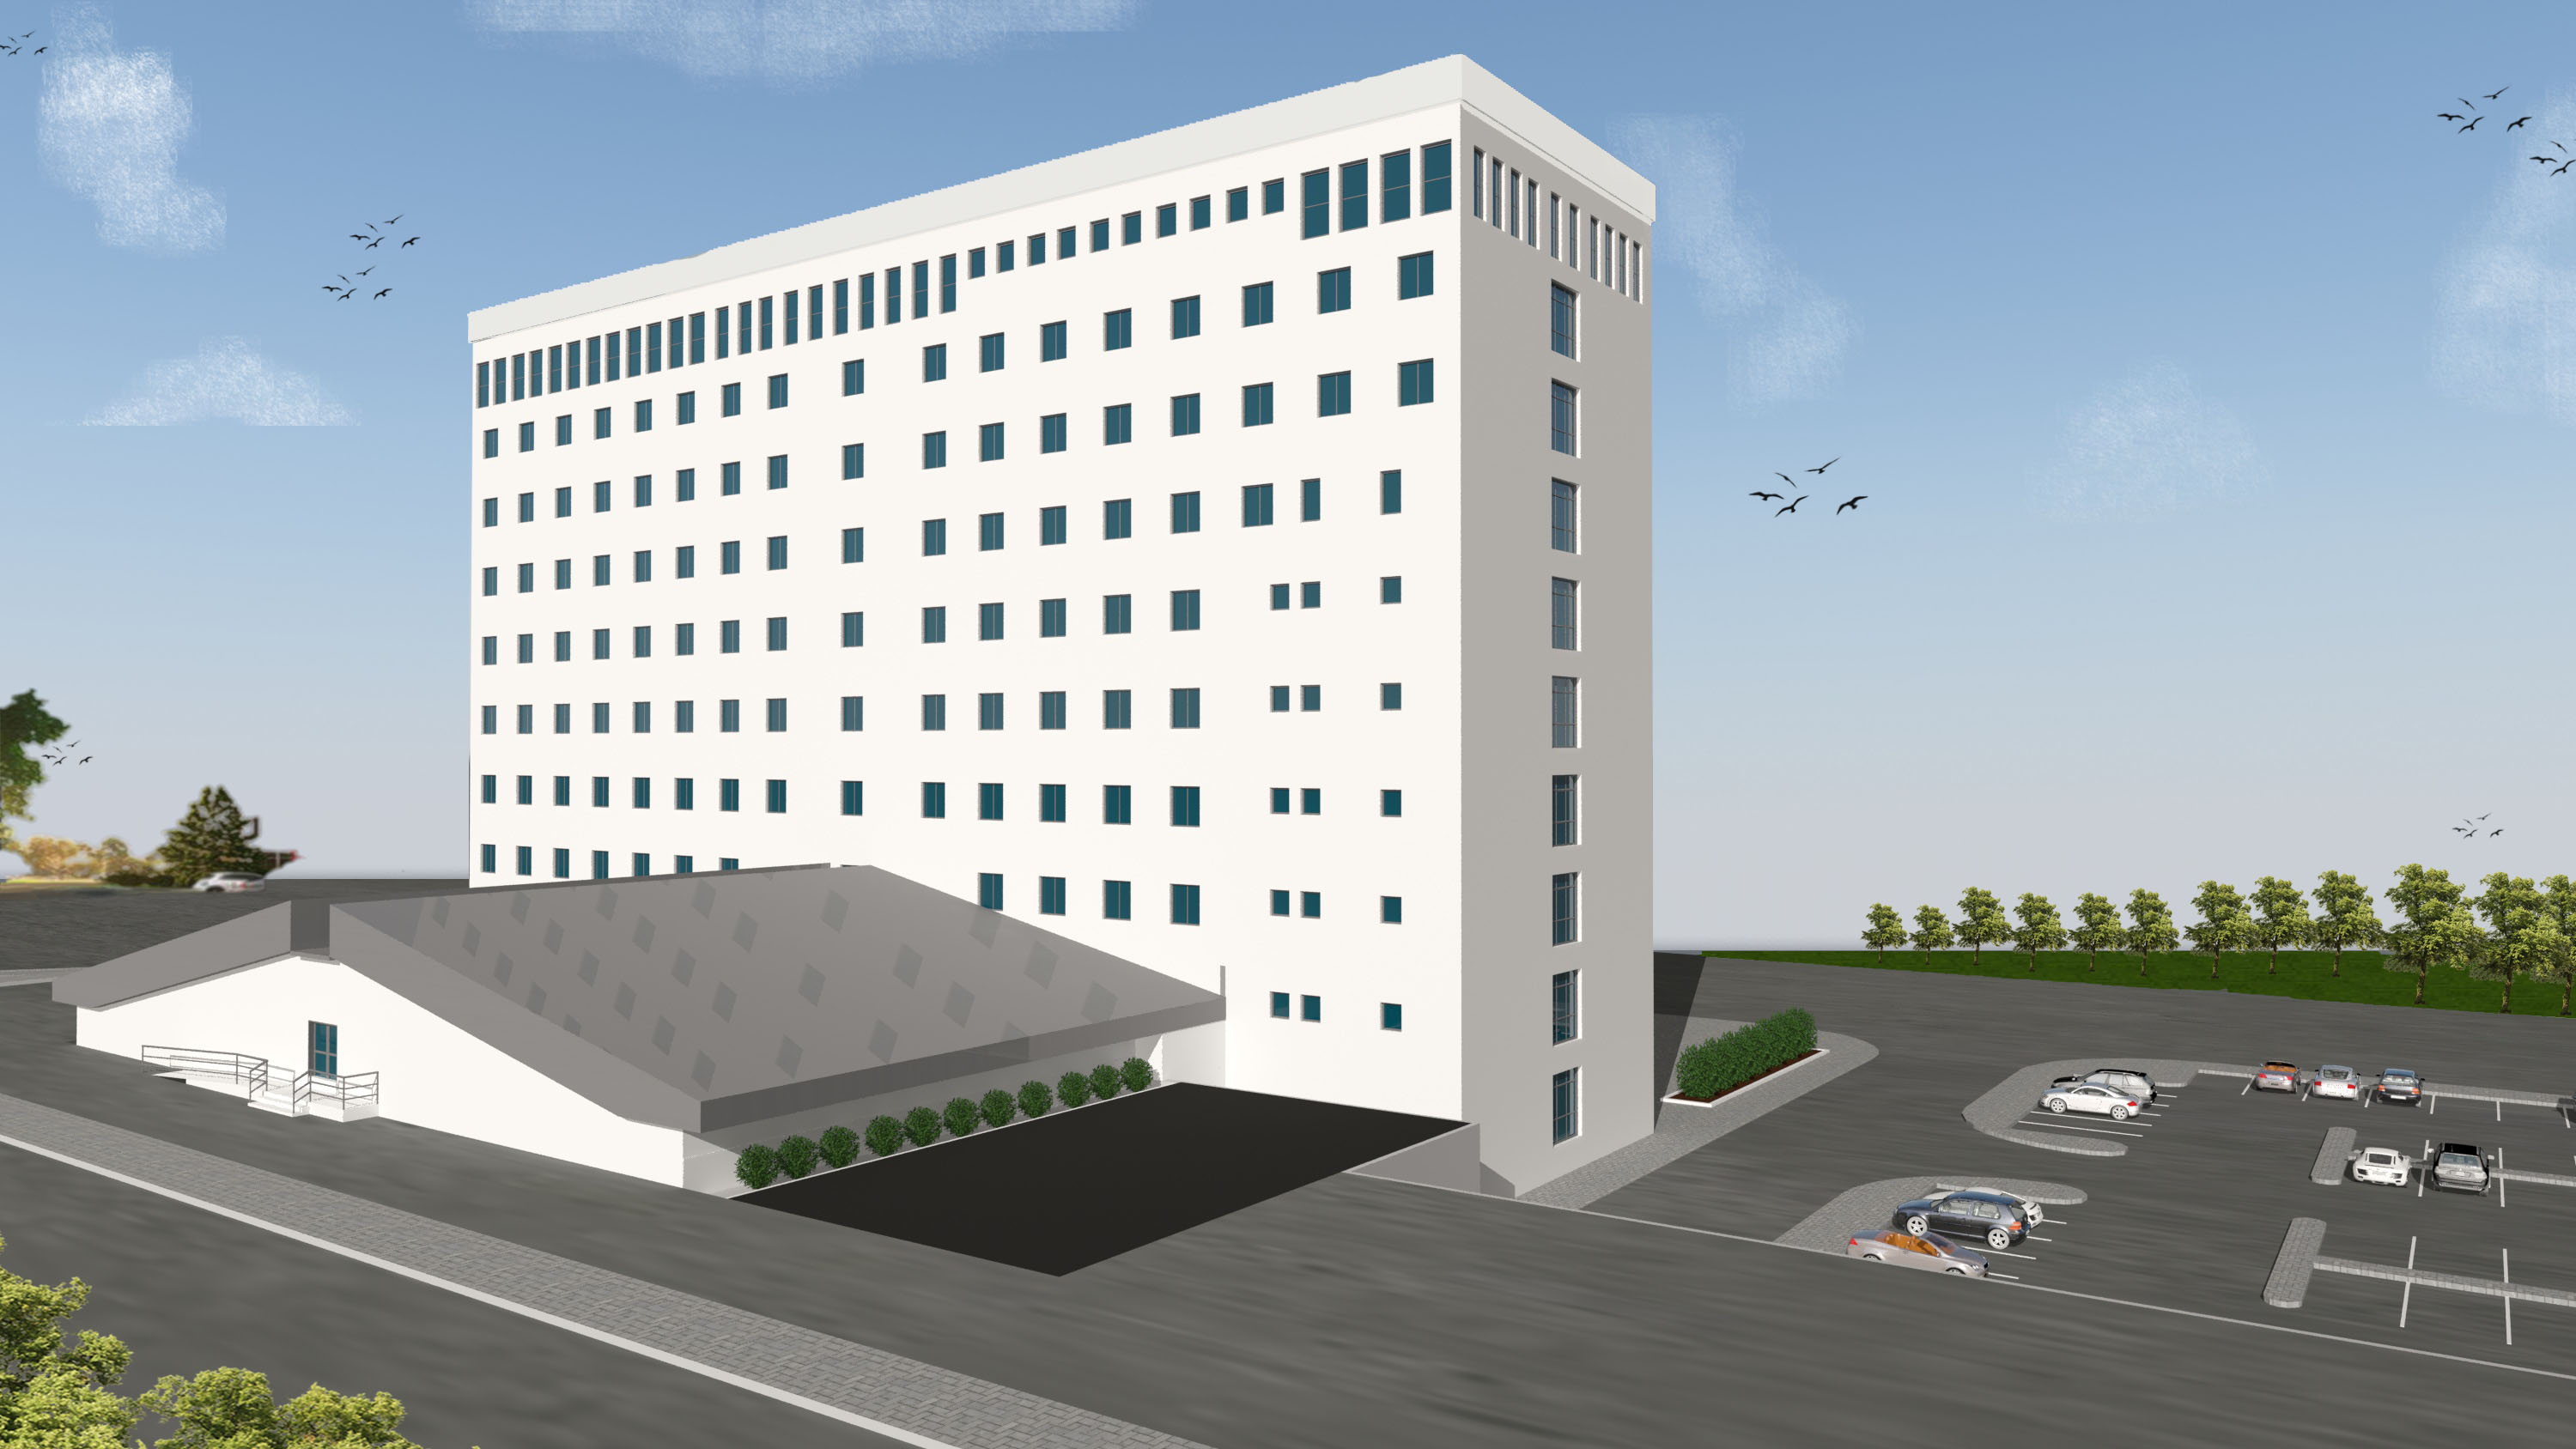 سيتم افتتاح مبنى كلية العلوم الصحية الجديد في جامعة الشرق الأدنى، الذي يضم 10 طوابق،  15 ألف متر مربع،  15 إدارة مختلفة في 15 تشرين الثاني / نوفمبر 2017.